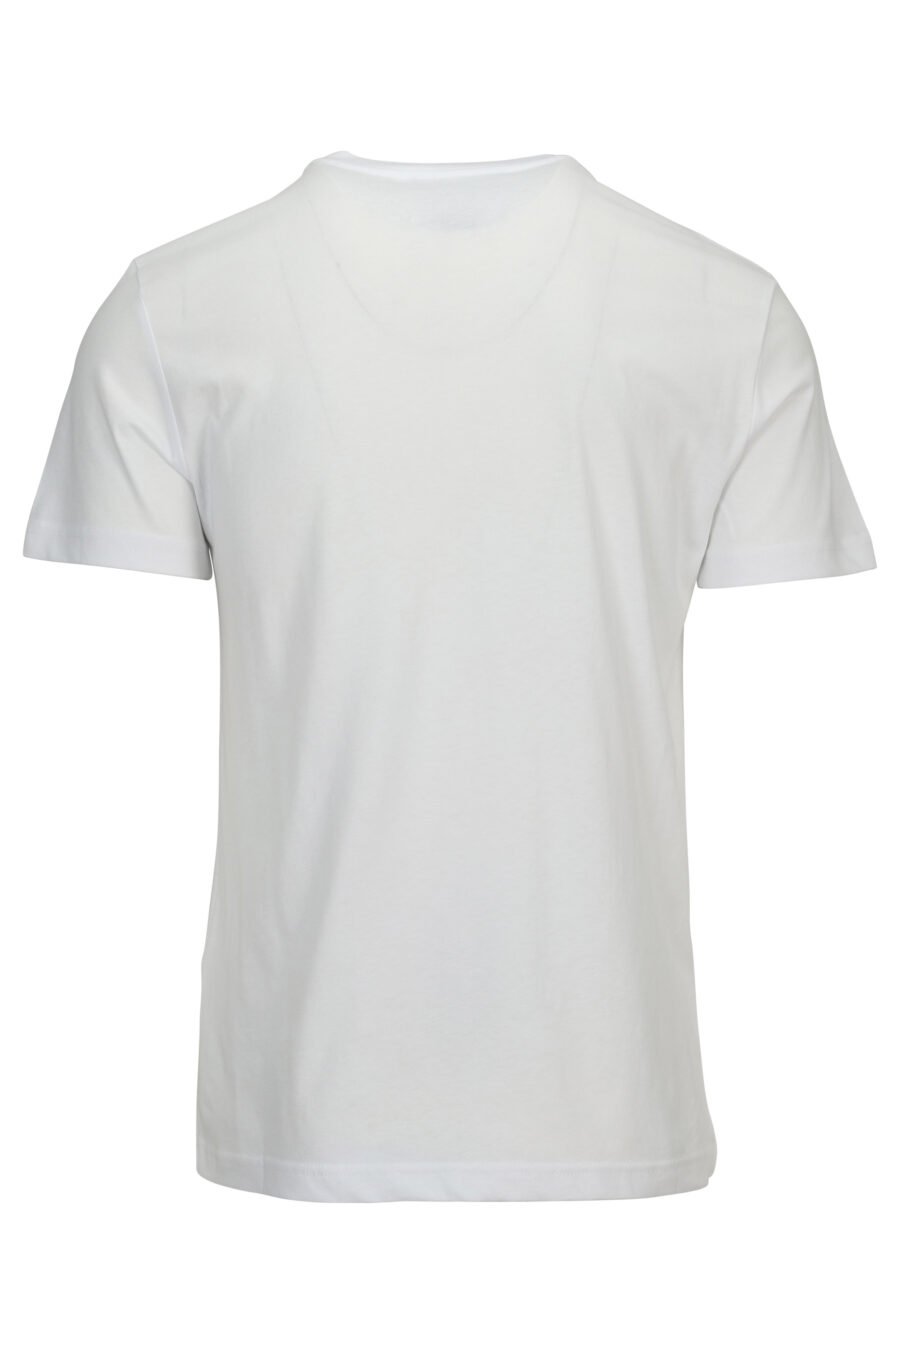 Camiseta blanca con maxilogo dorado brillante - 8052019579987 1